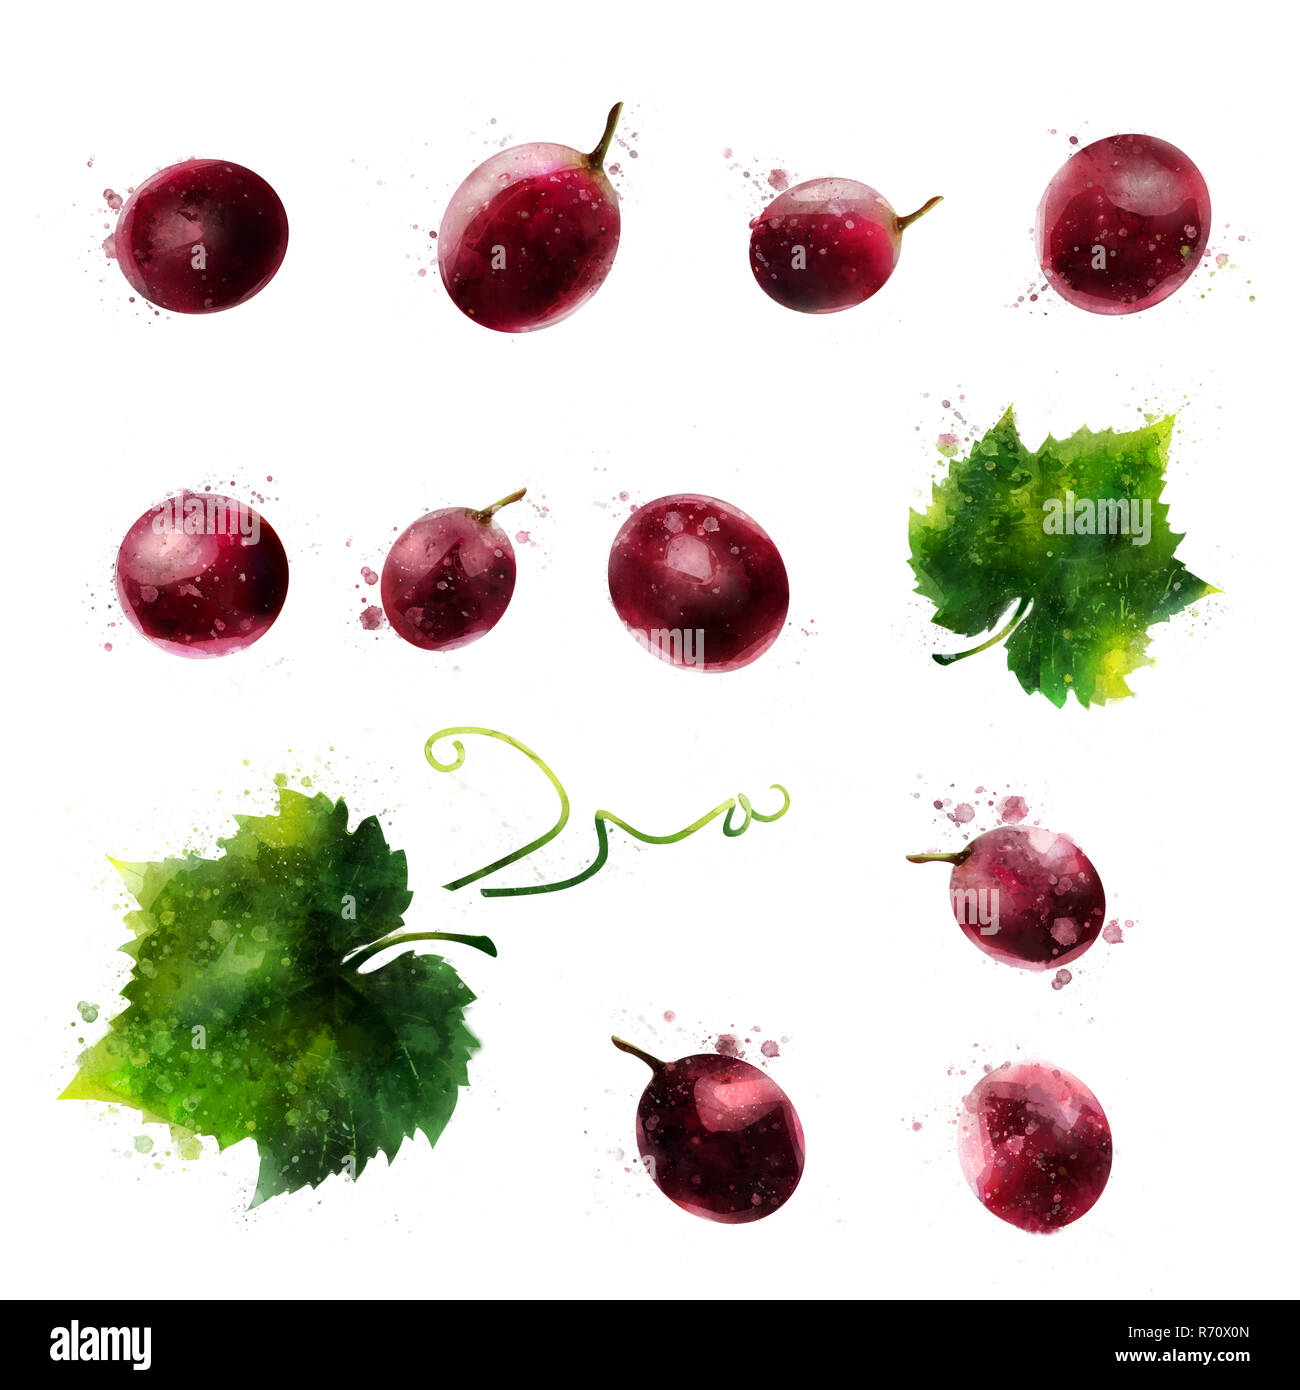 Les raisins rouges sur fond blanc. Illustration à l'aquarelle Banque D'Images